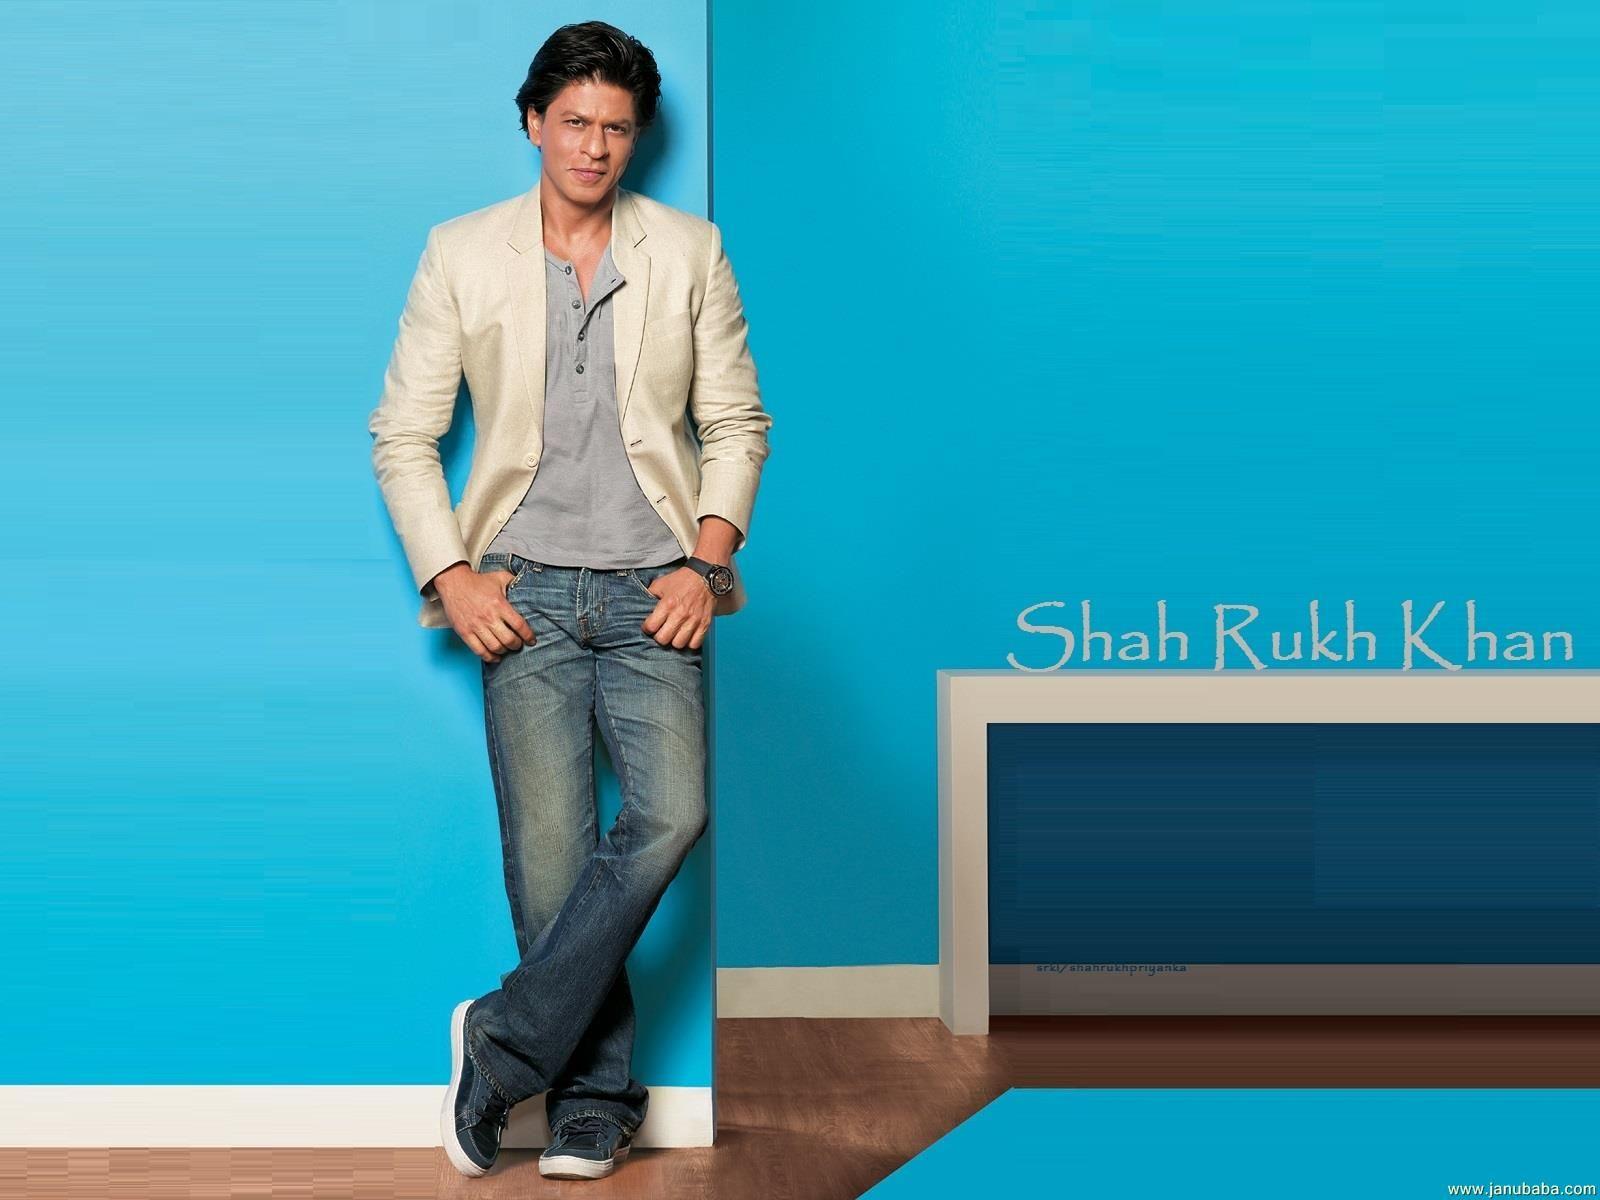 Shah Rukh Khan Image, HD Wallpapers, and Photos